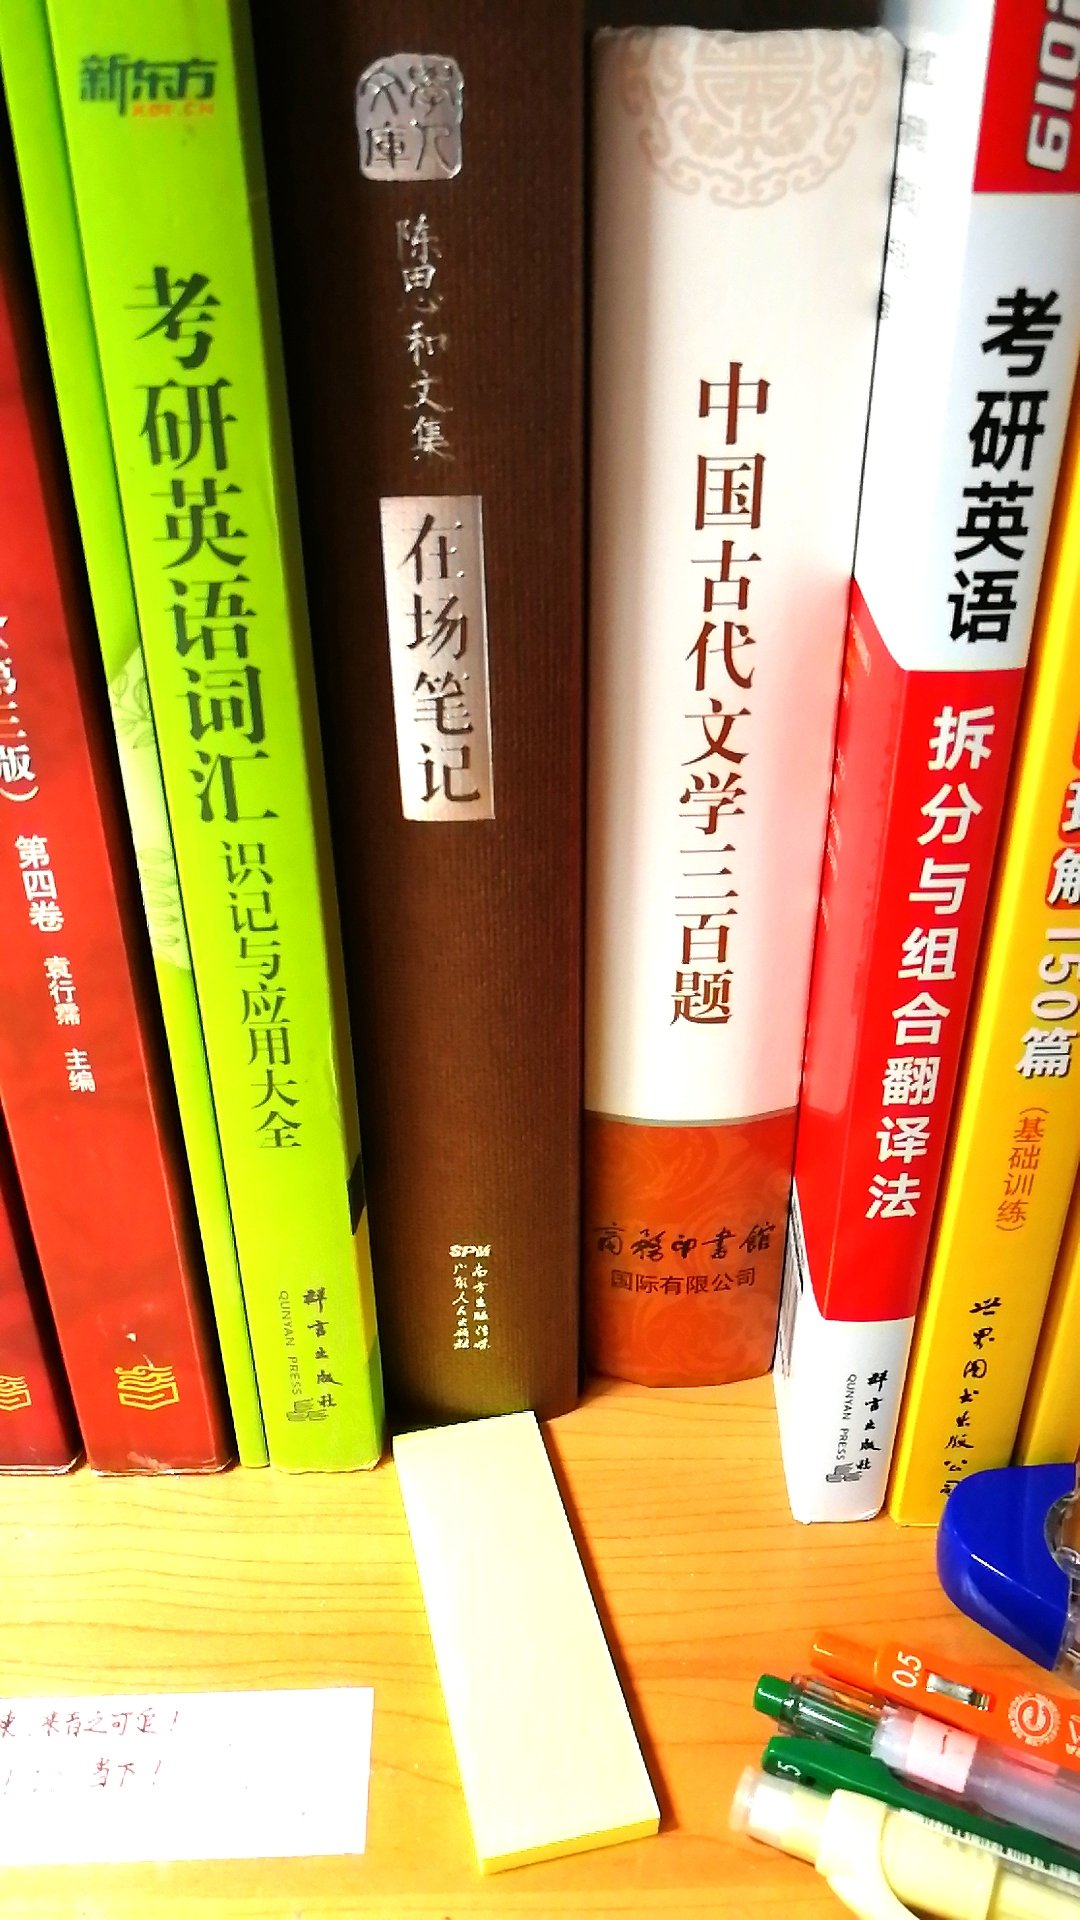 陈思和老先生的书非常值得收藏。